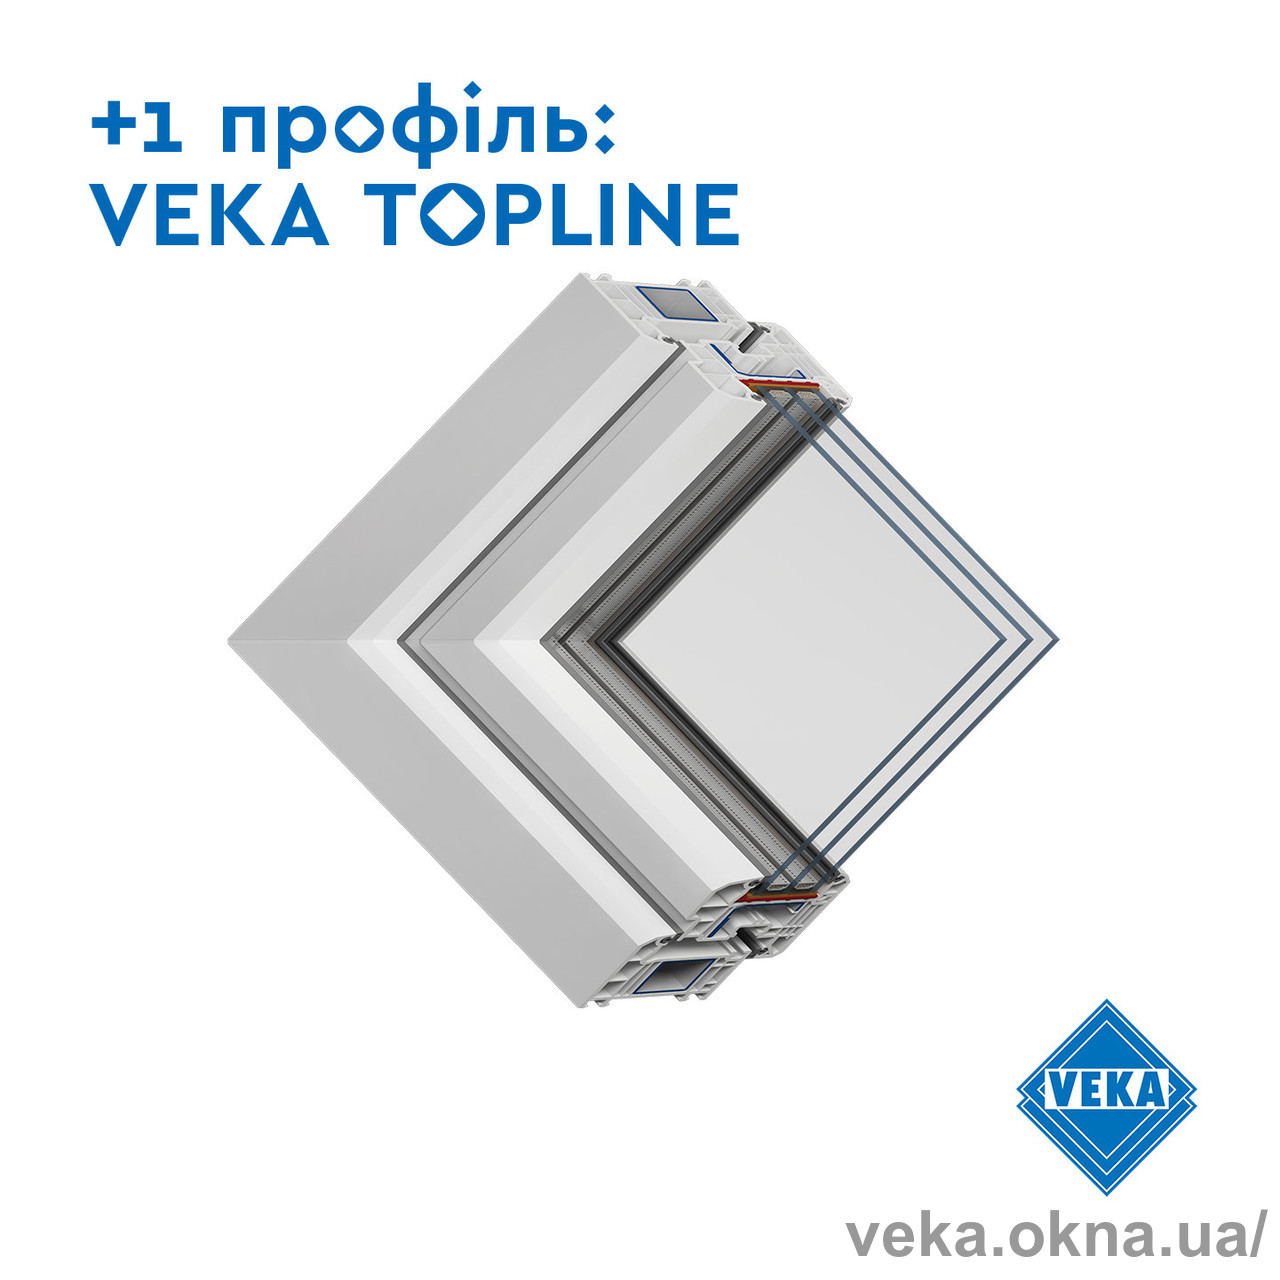 VEKA Україна виводить на ринок профіль TOPLINE